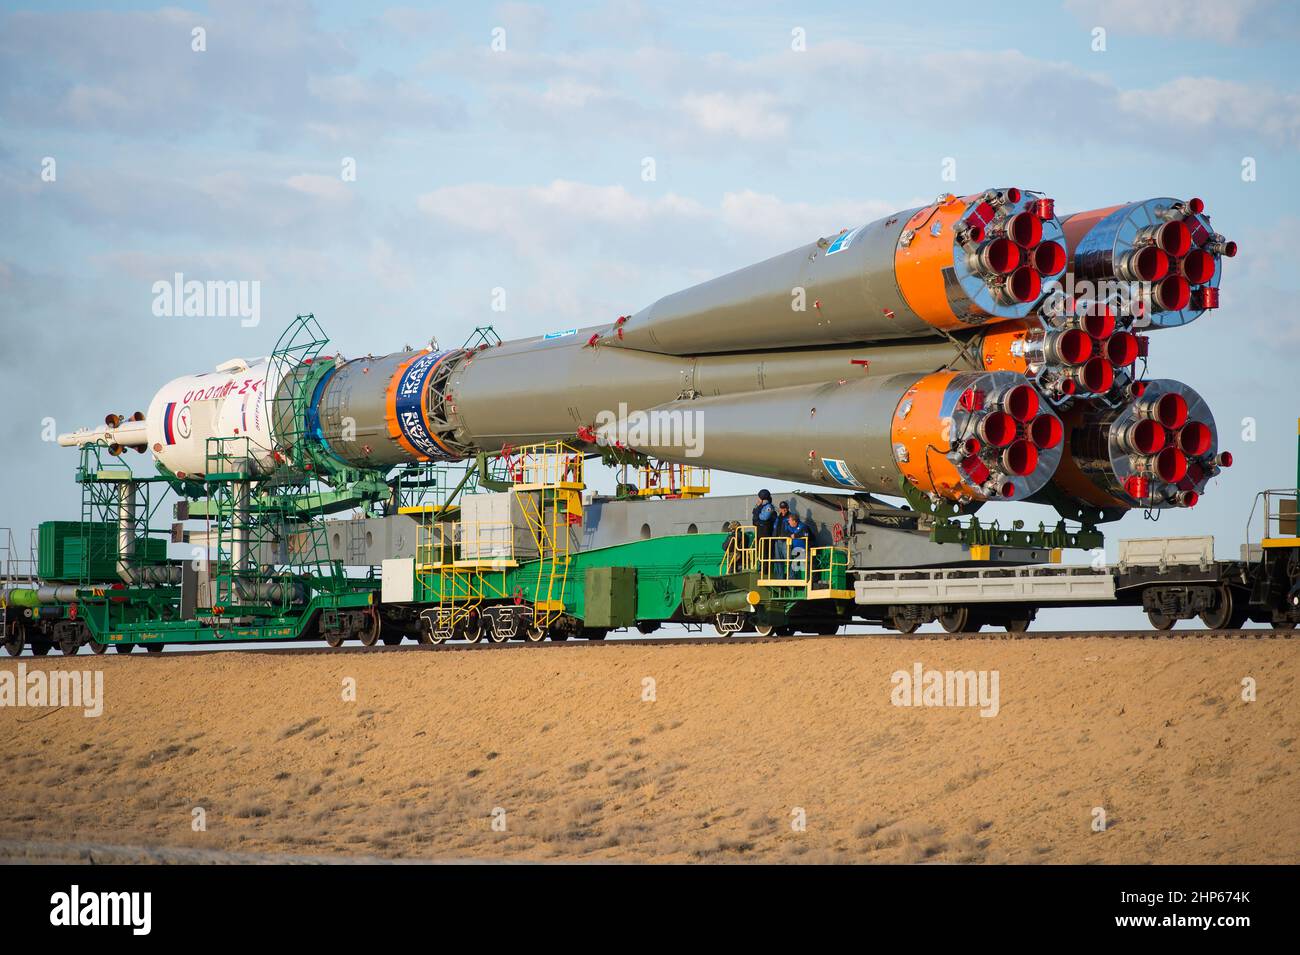 La navicella spaziale Soyuz TMA-14M viene lanciata sul trampolino di lancio in treno martedì 23 settembre 2014 presso il Cossodrome di Baikonur in Kazakistan. Foto Stock